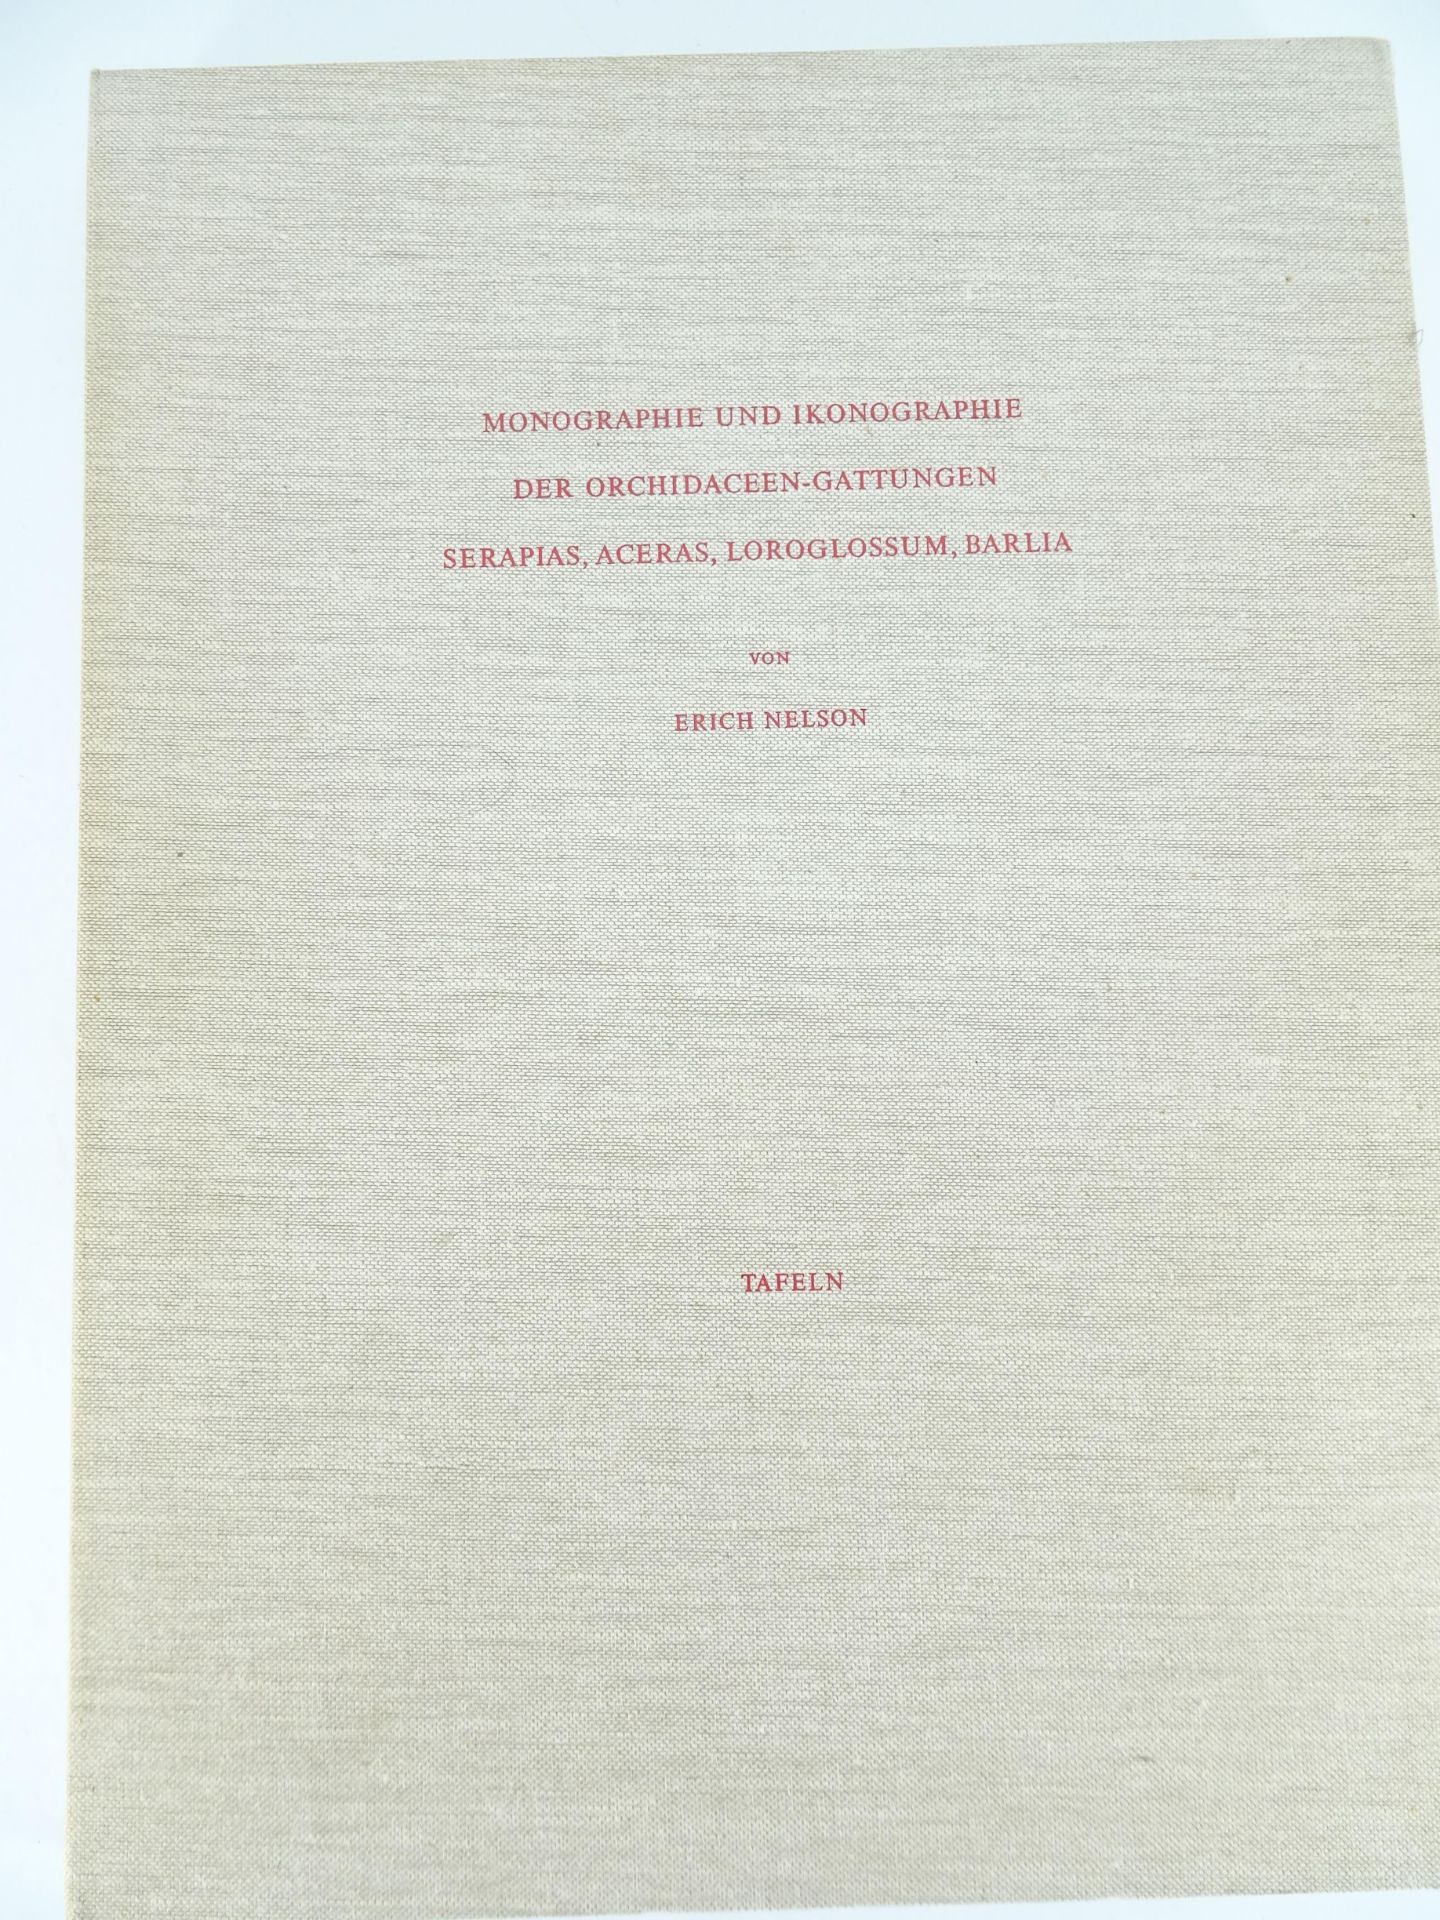 |Orchidaceae| Erch Nelson, "Monographie une Ikonographie der Orchidaceen - Gattungen Serapias,